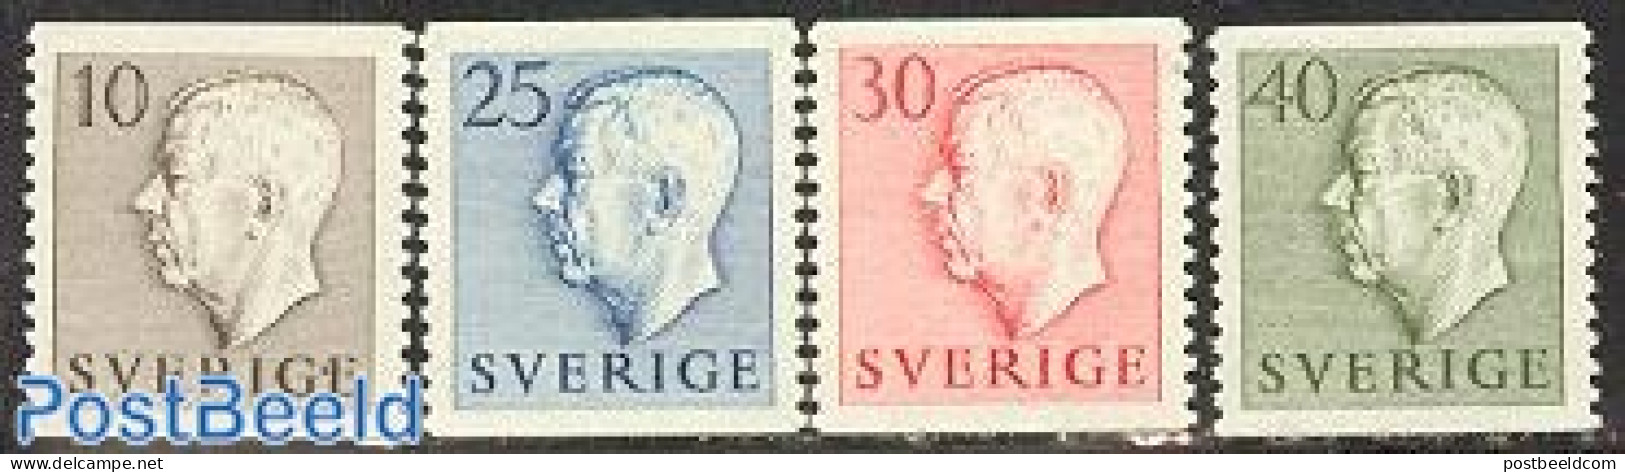 Sweden 1954 Definitives 4v, Mint NH - Neufs